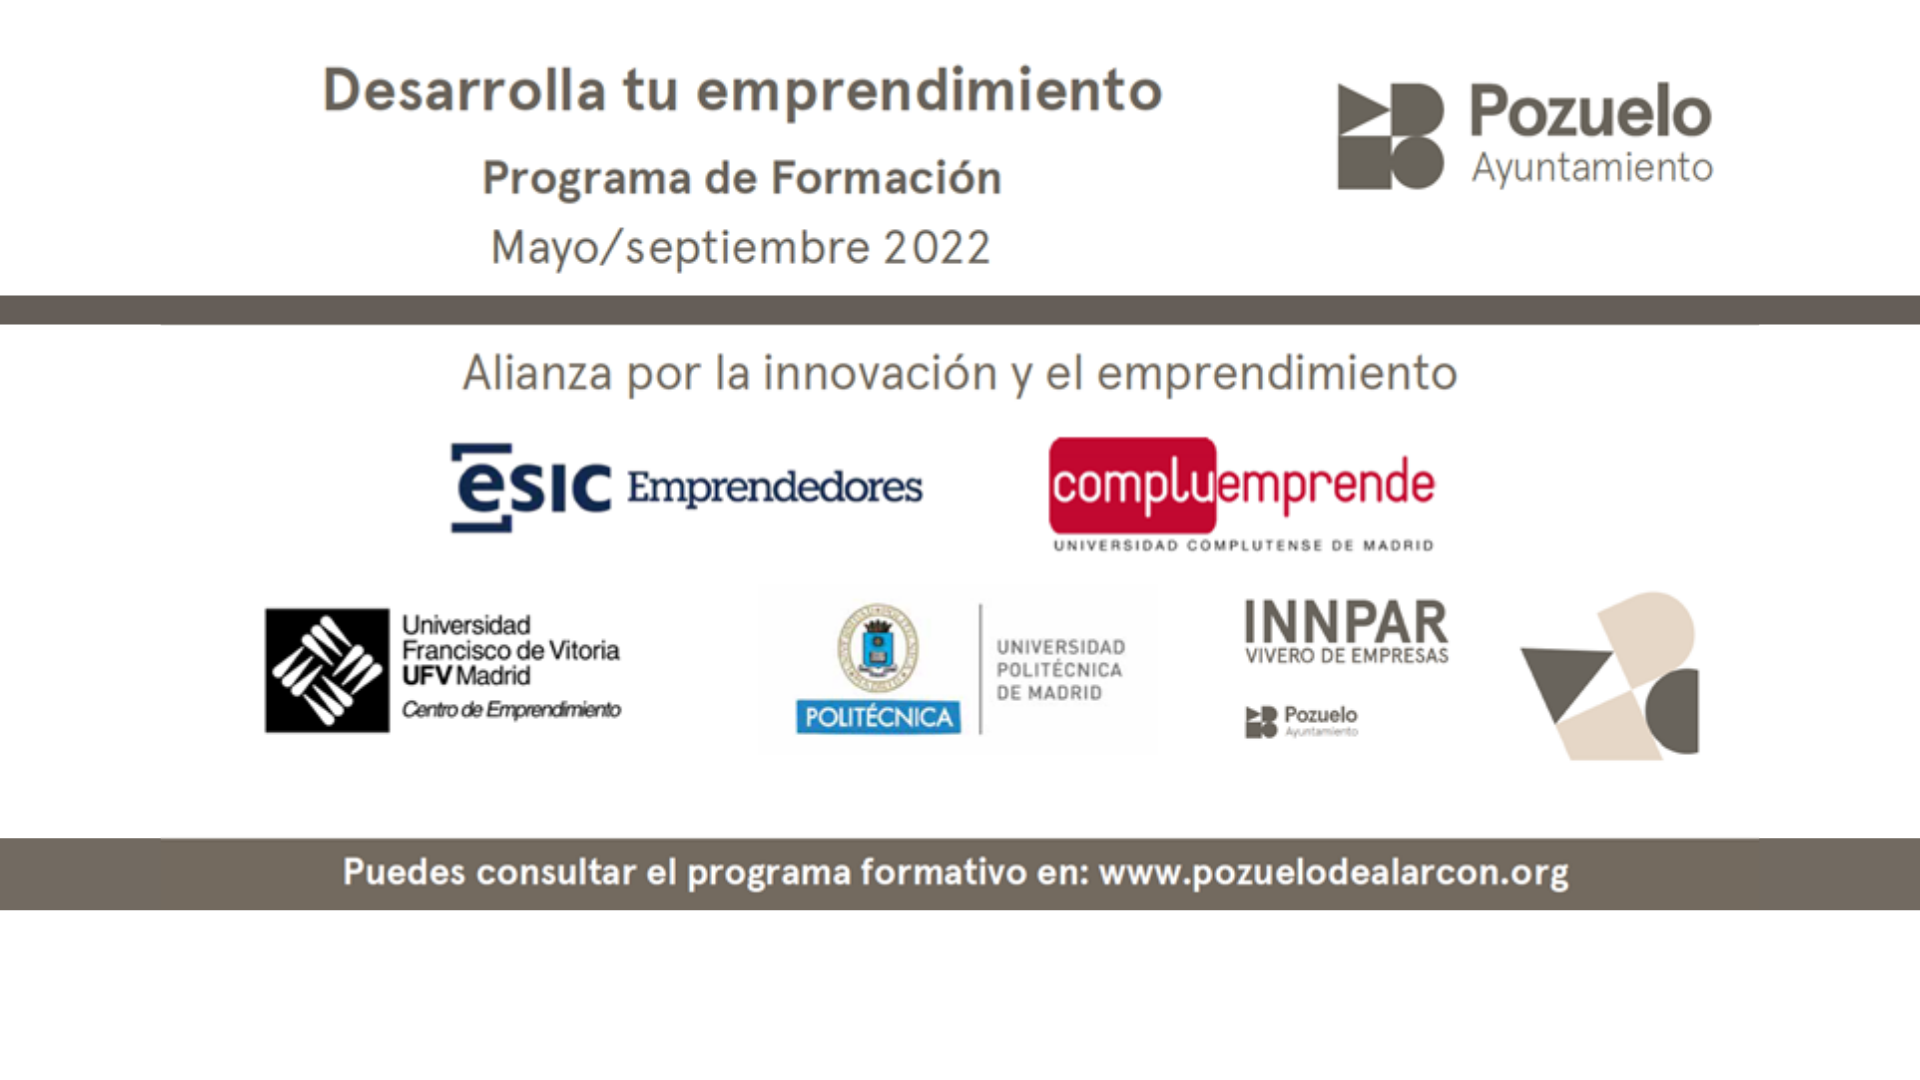 Nuevo programa de formación presencial y online para emprendedores. INNPAR VIVERO DE EMPRESAS